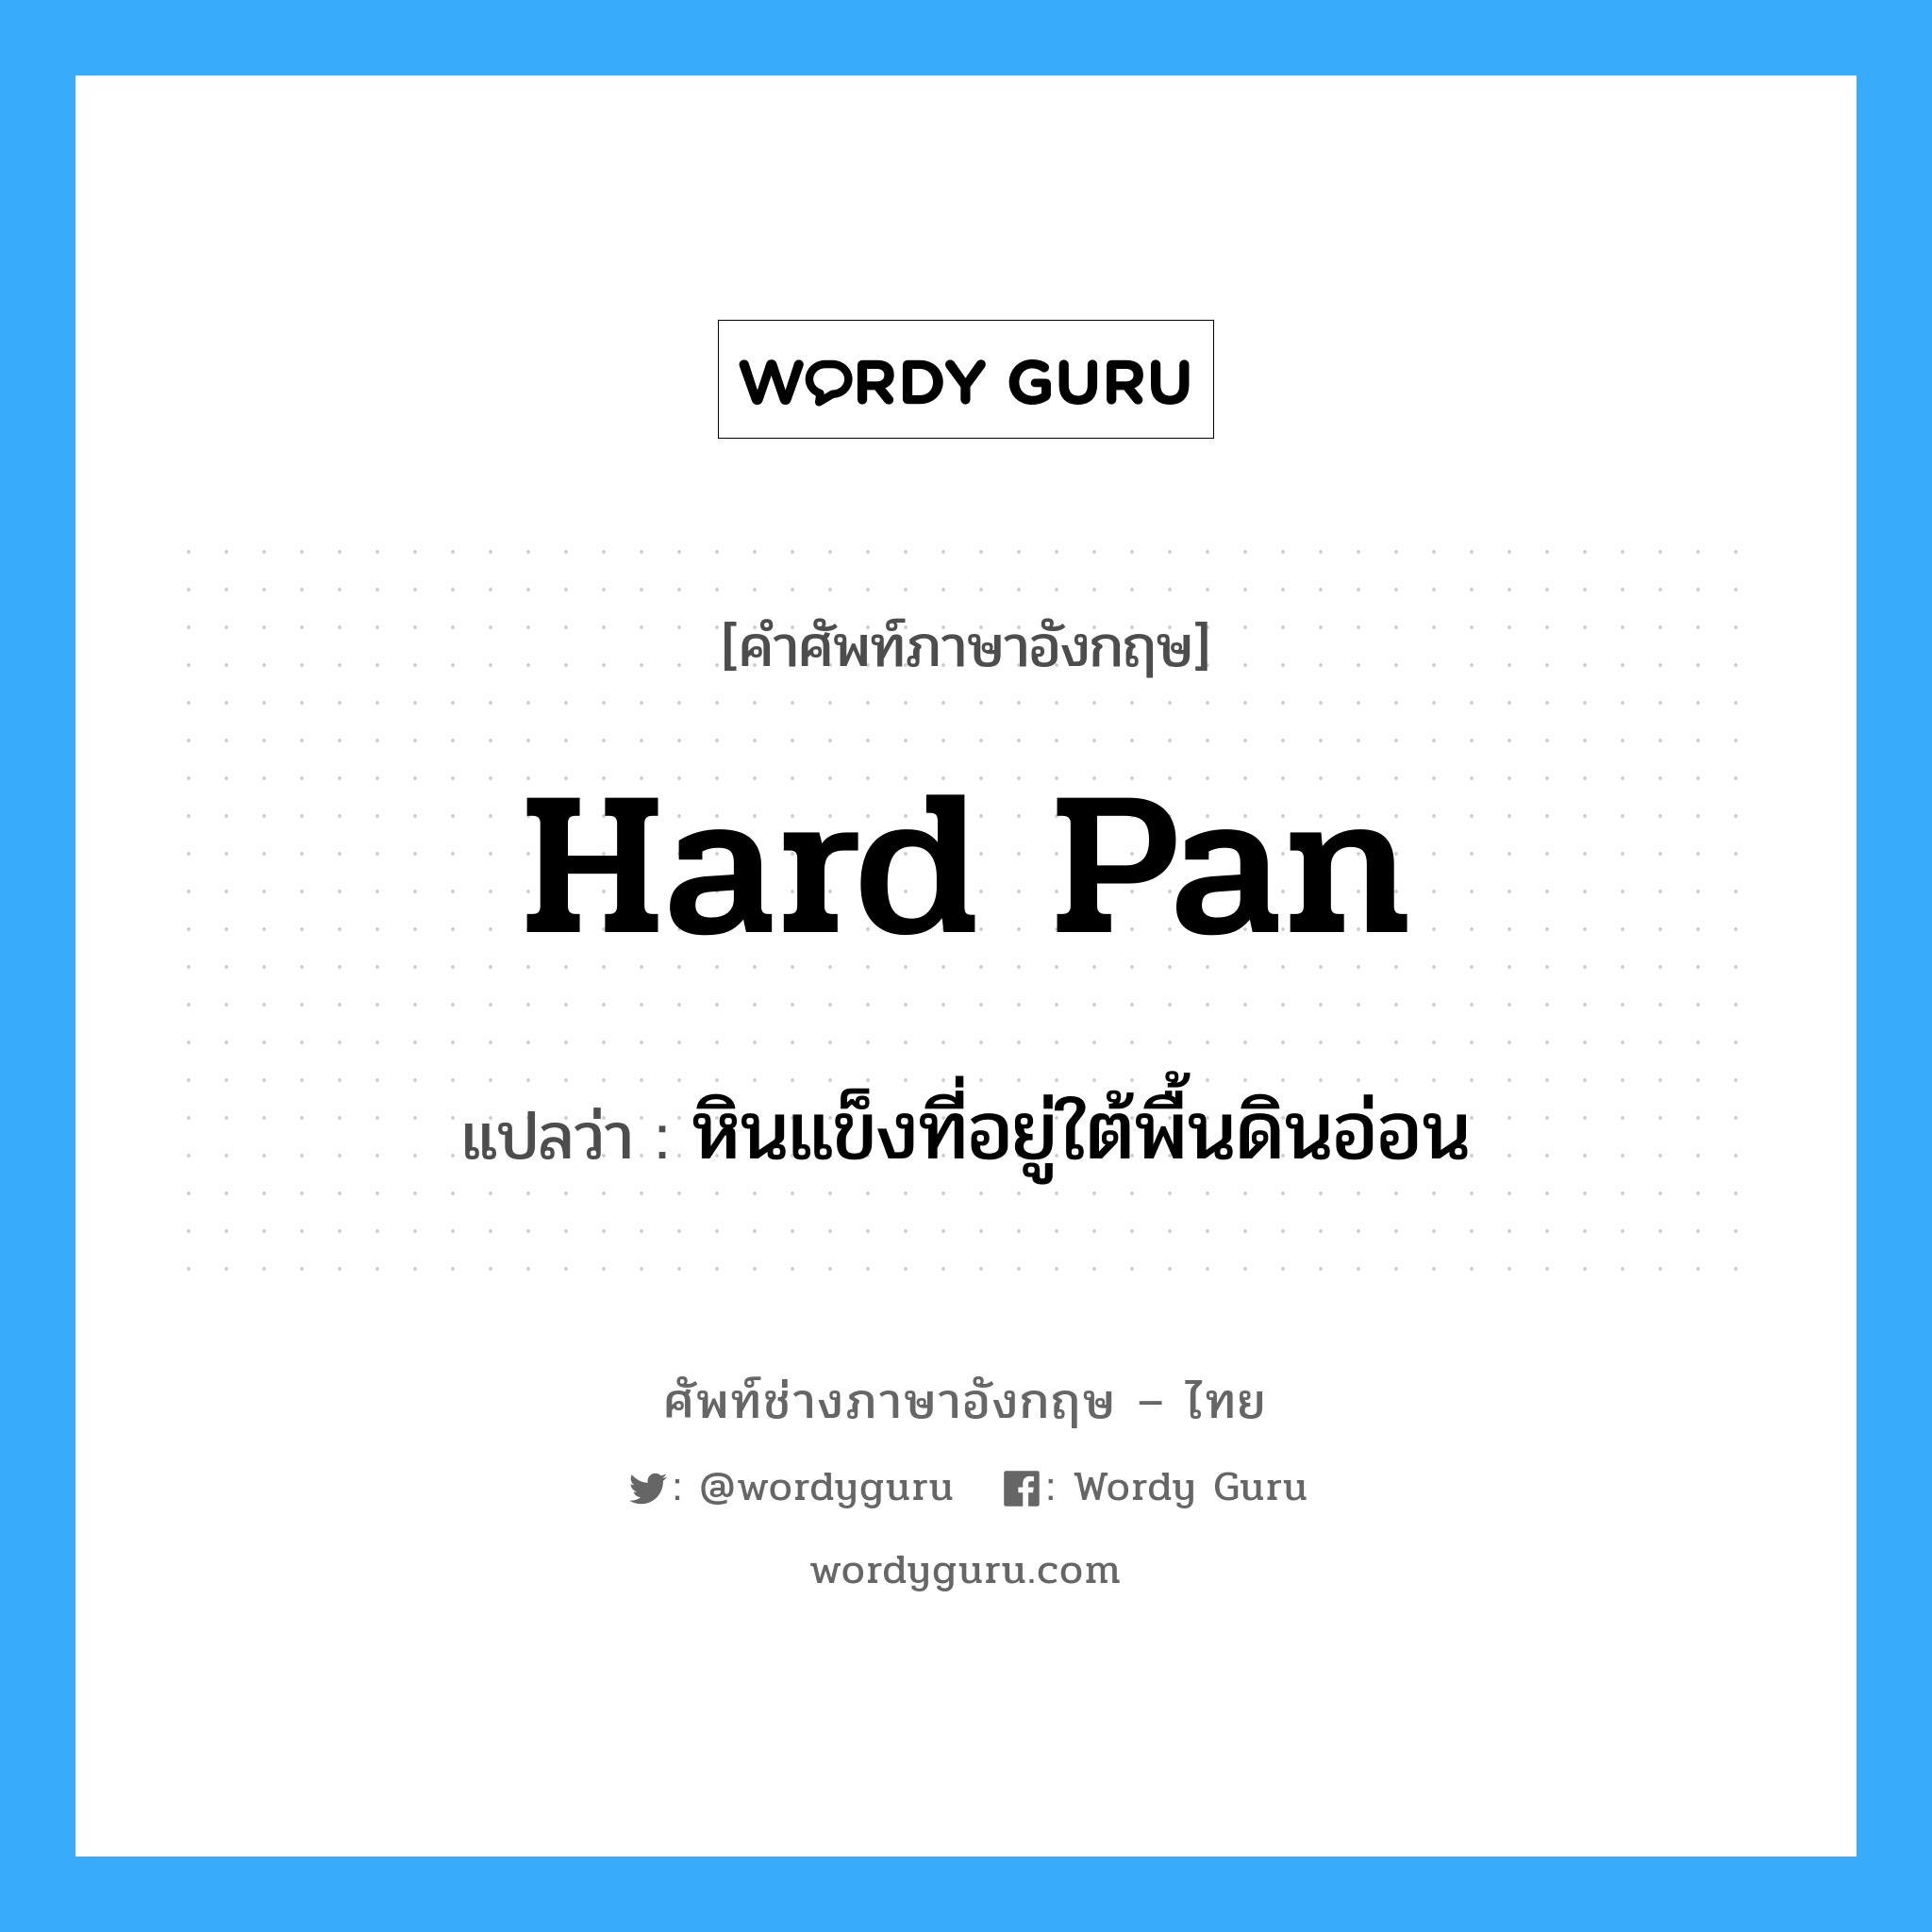 hard pan แปลว่า?, คำศัพท์ช่างภาษาอังกฤษ - ไทย hard pan คำศัพท์ภาษาอังกฤษ hard pan แปลว่า หินแข็งที่อยู่ใต้พื้นดินอ่อน